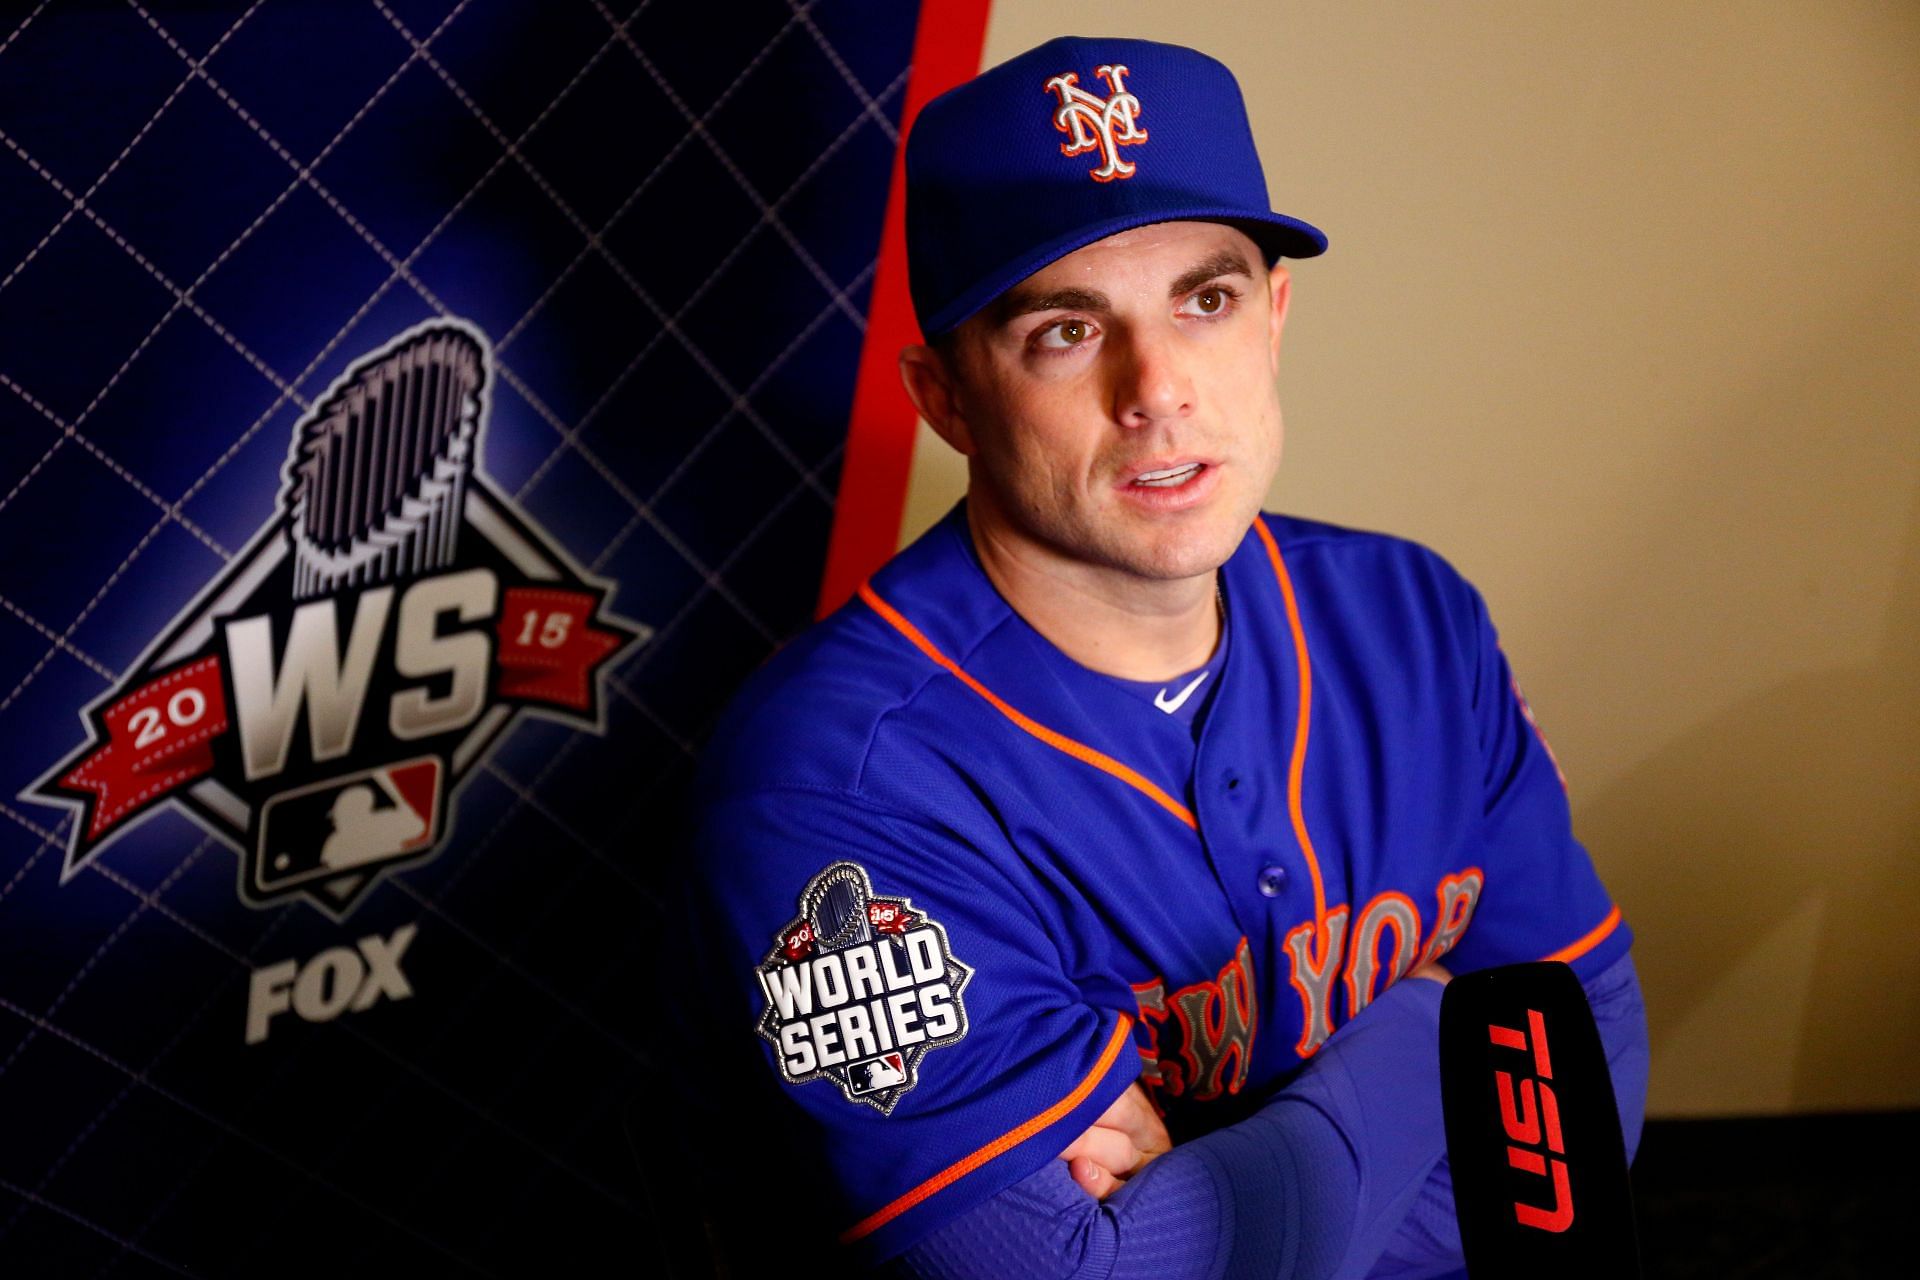 David Wright: A look back at his NY Mets career